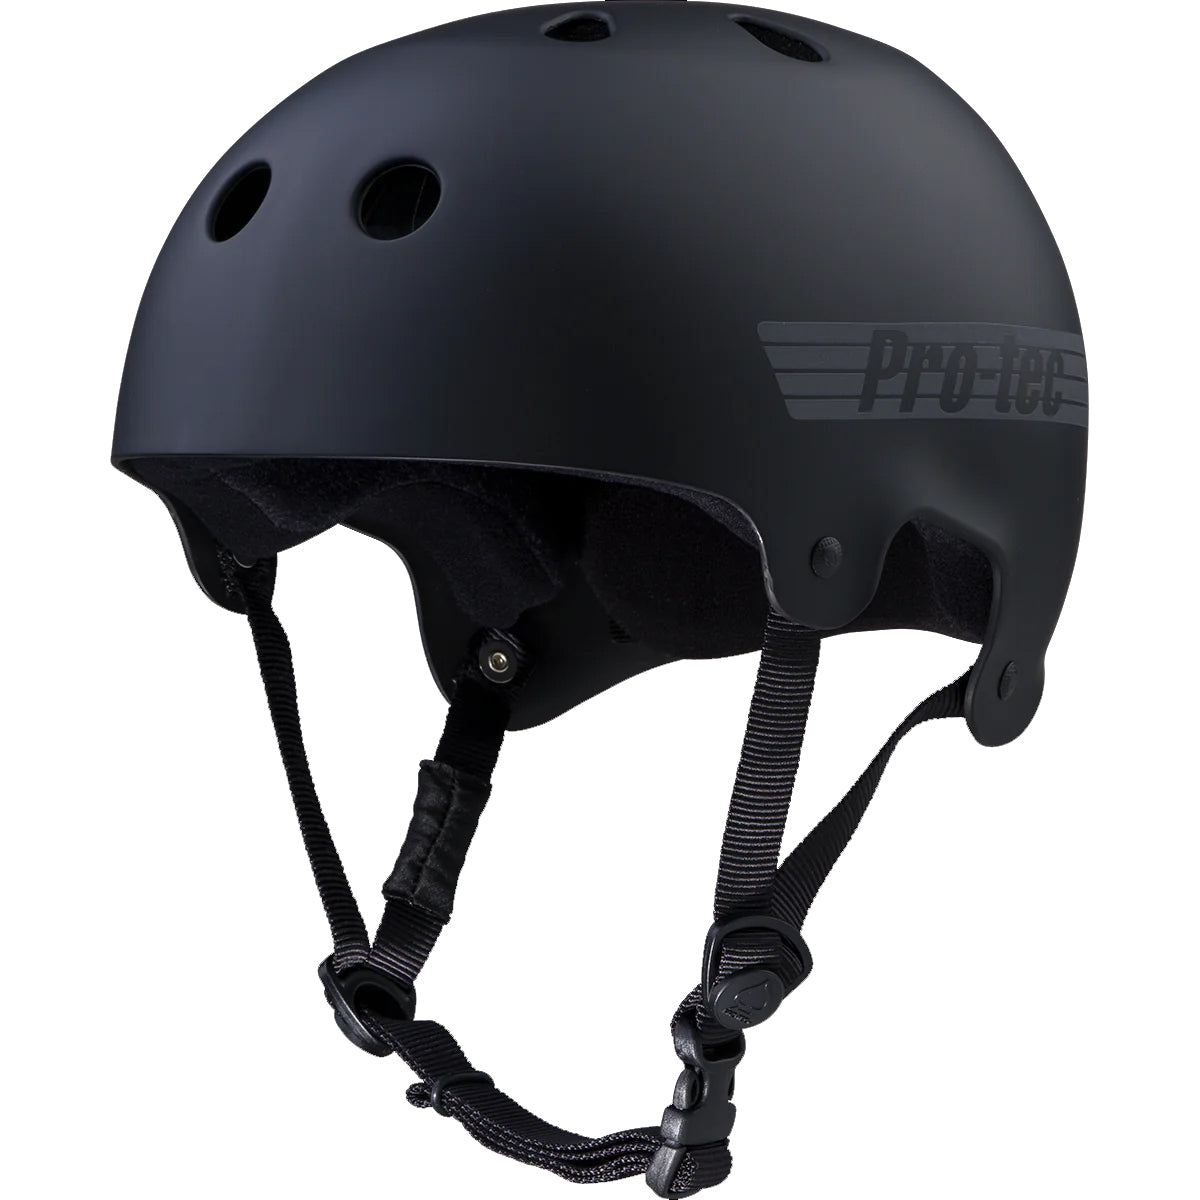 Protec Old School Matte Black Skate Helmet